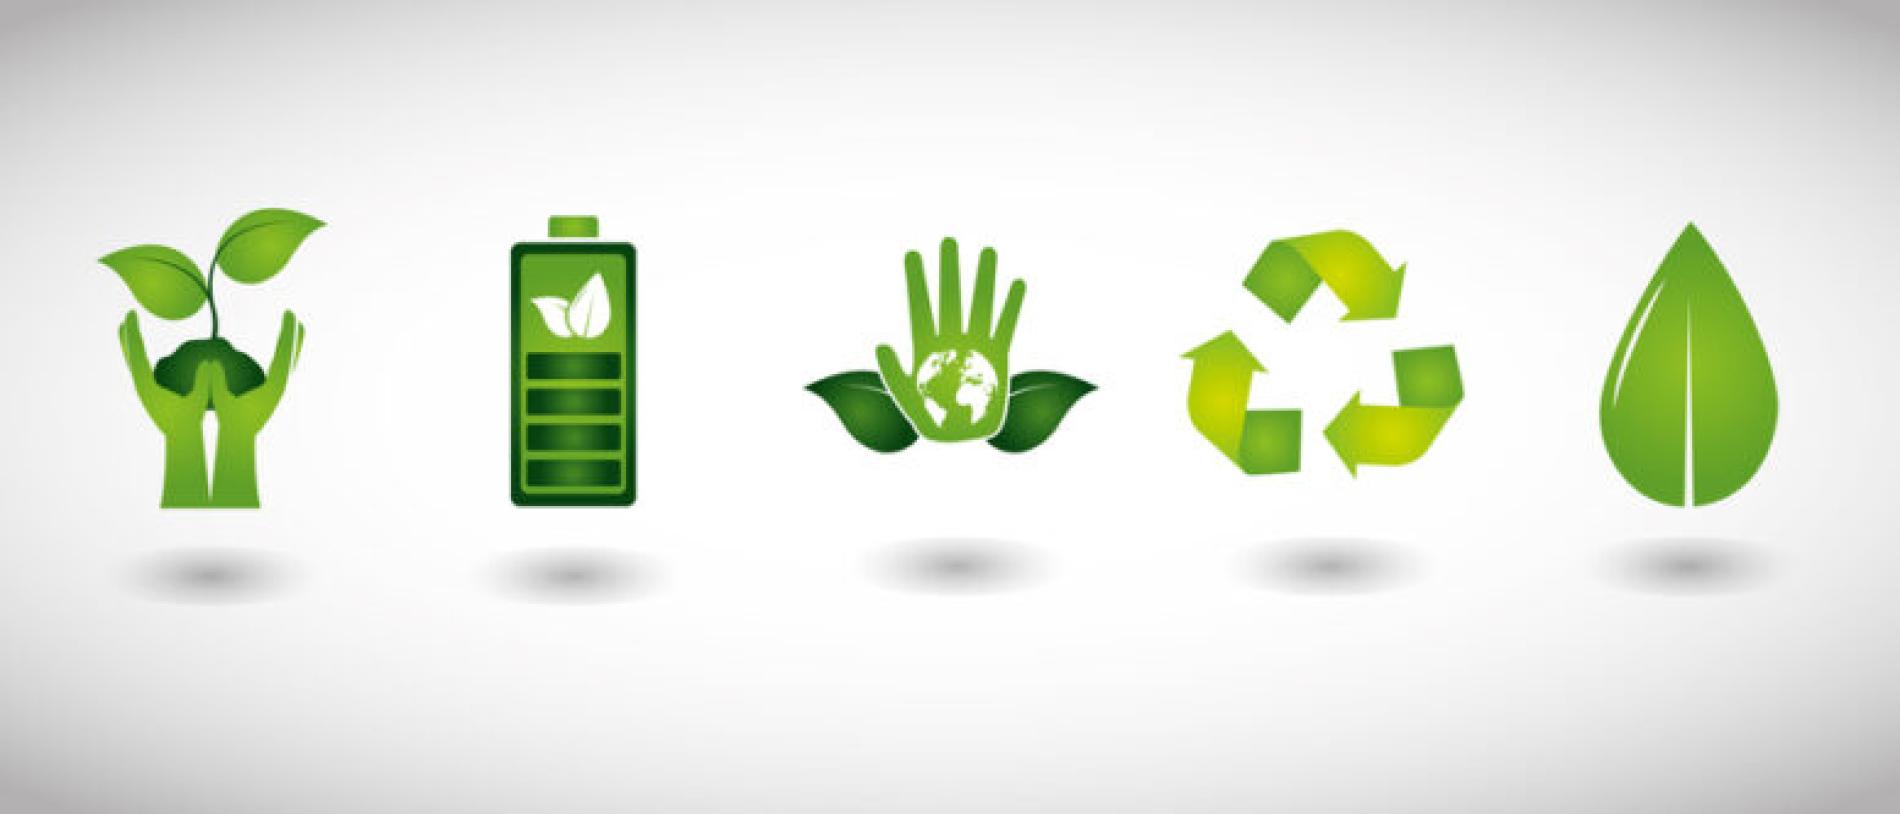 Notre engagement  Eco-friendly pour la planète et une vie meilleure